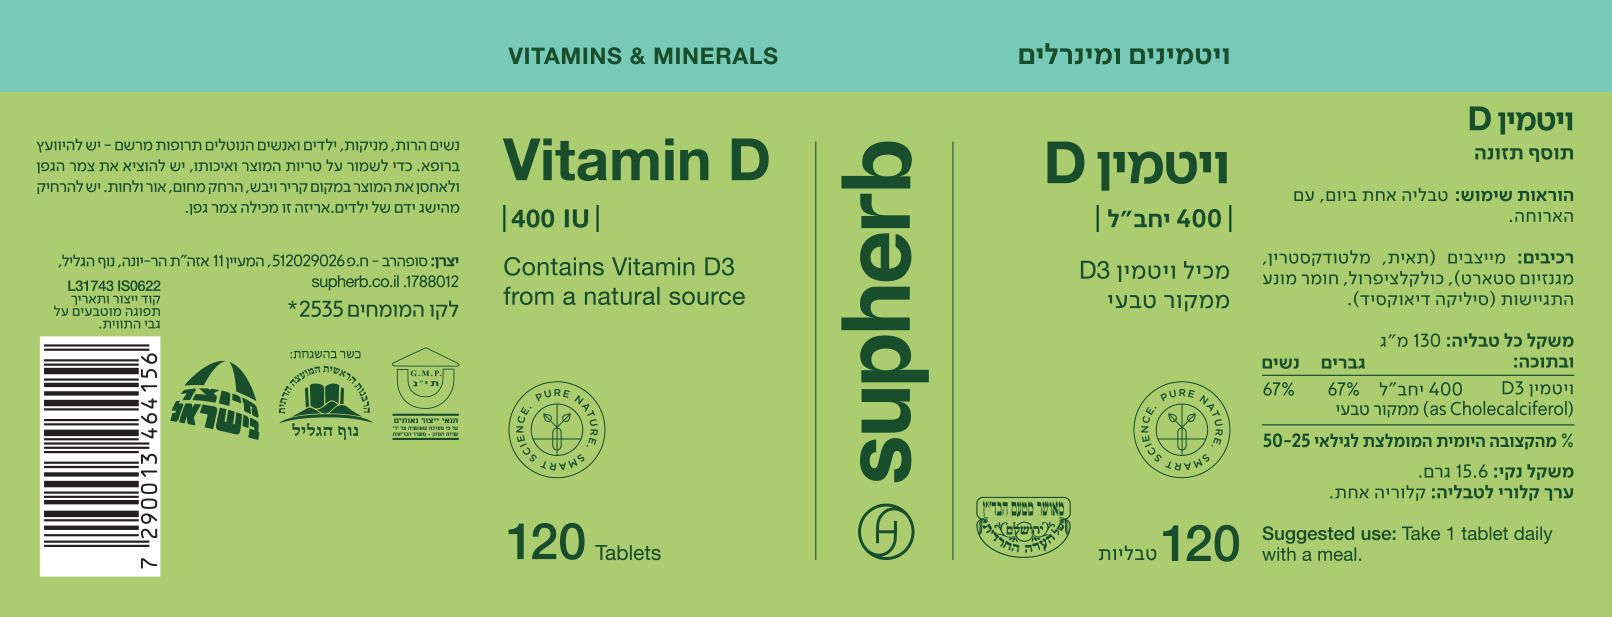 ויטמין D יבש במינון 400 יחב"ל